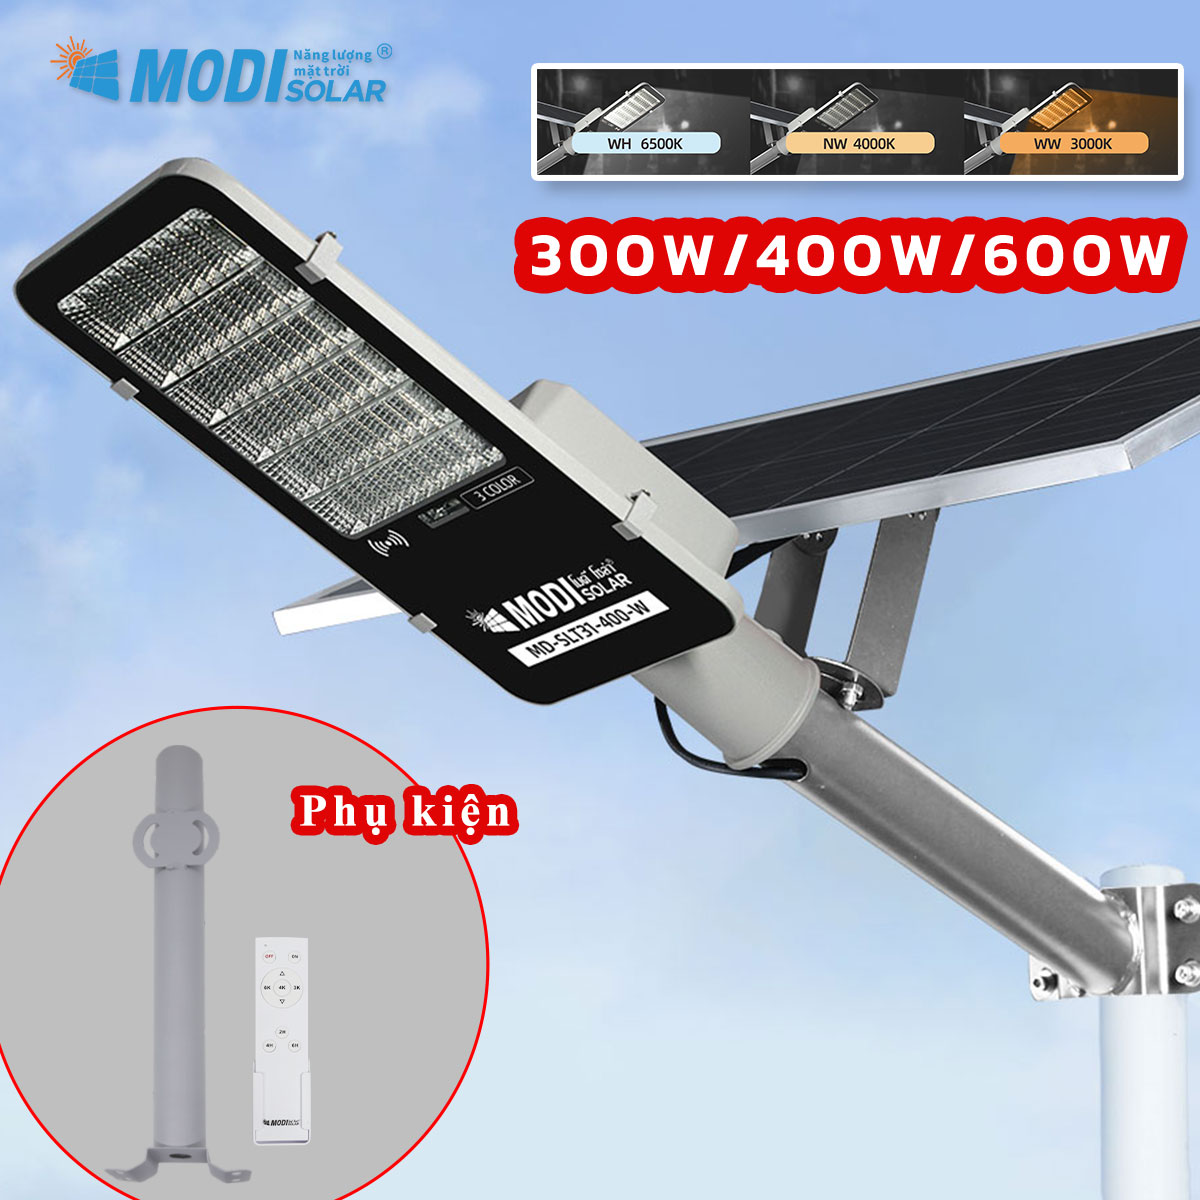 Đèn đường năng lượng mặt trời MODI 300W 400W 600W Điều khiển từ xa thông